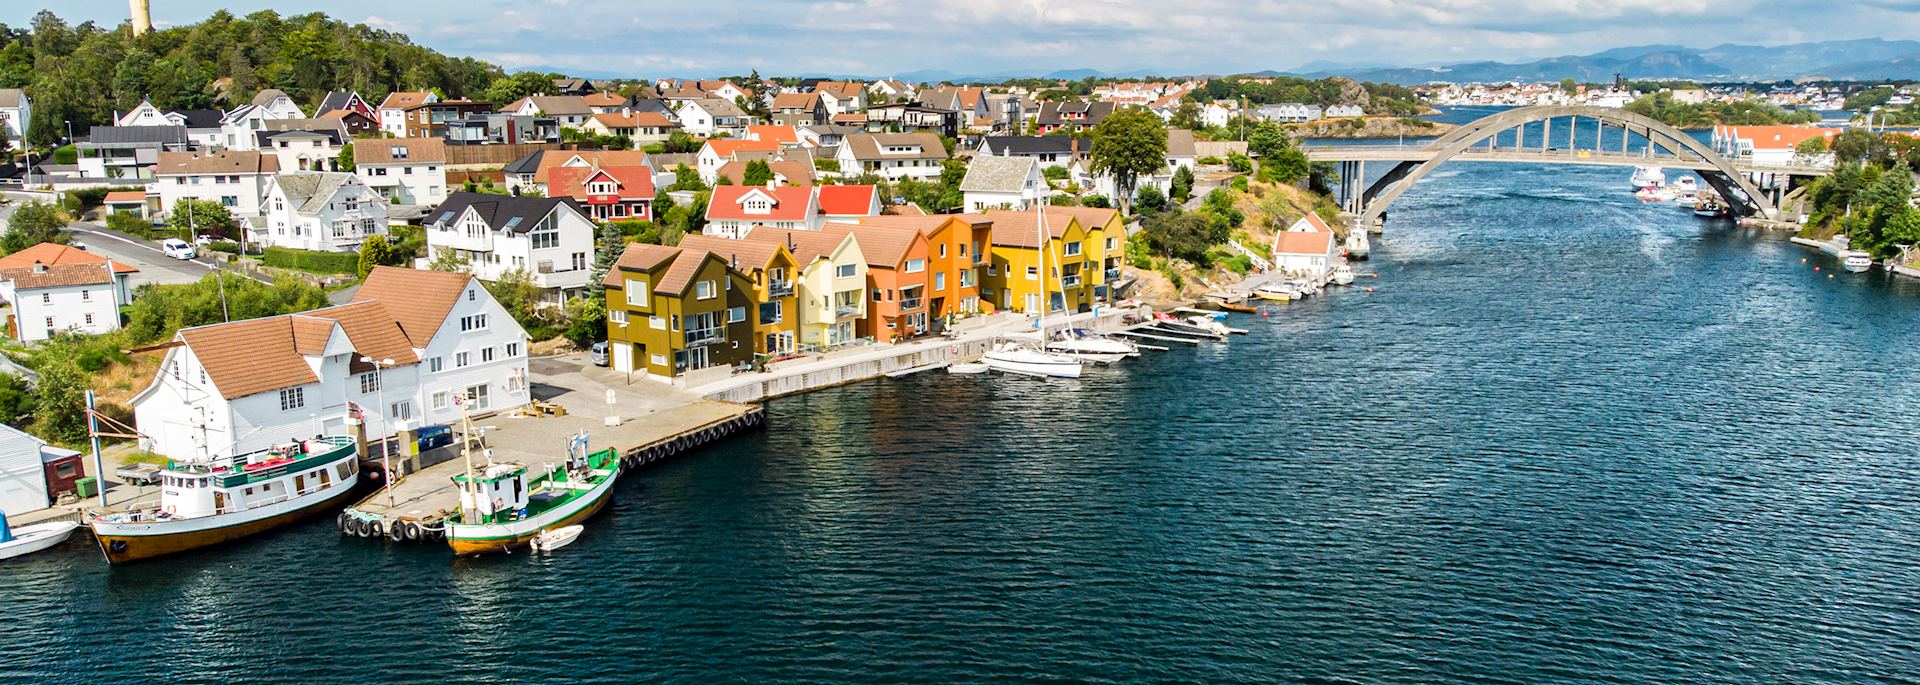 Stavanger waterfront